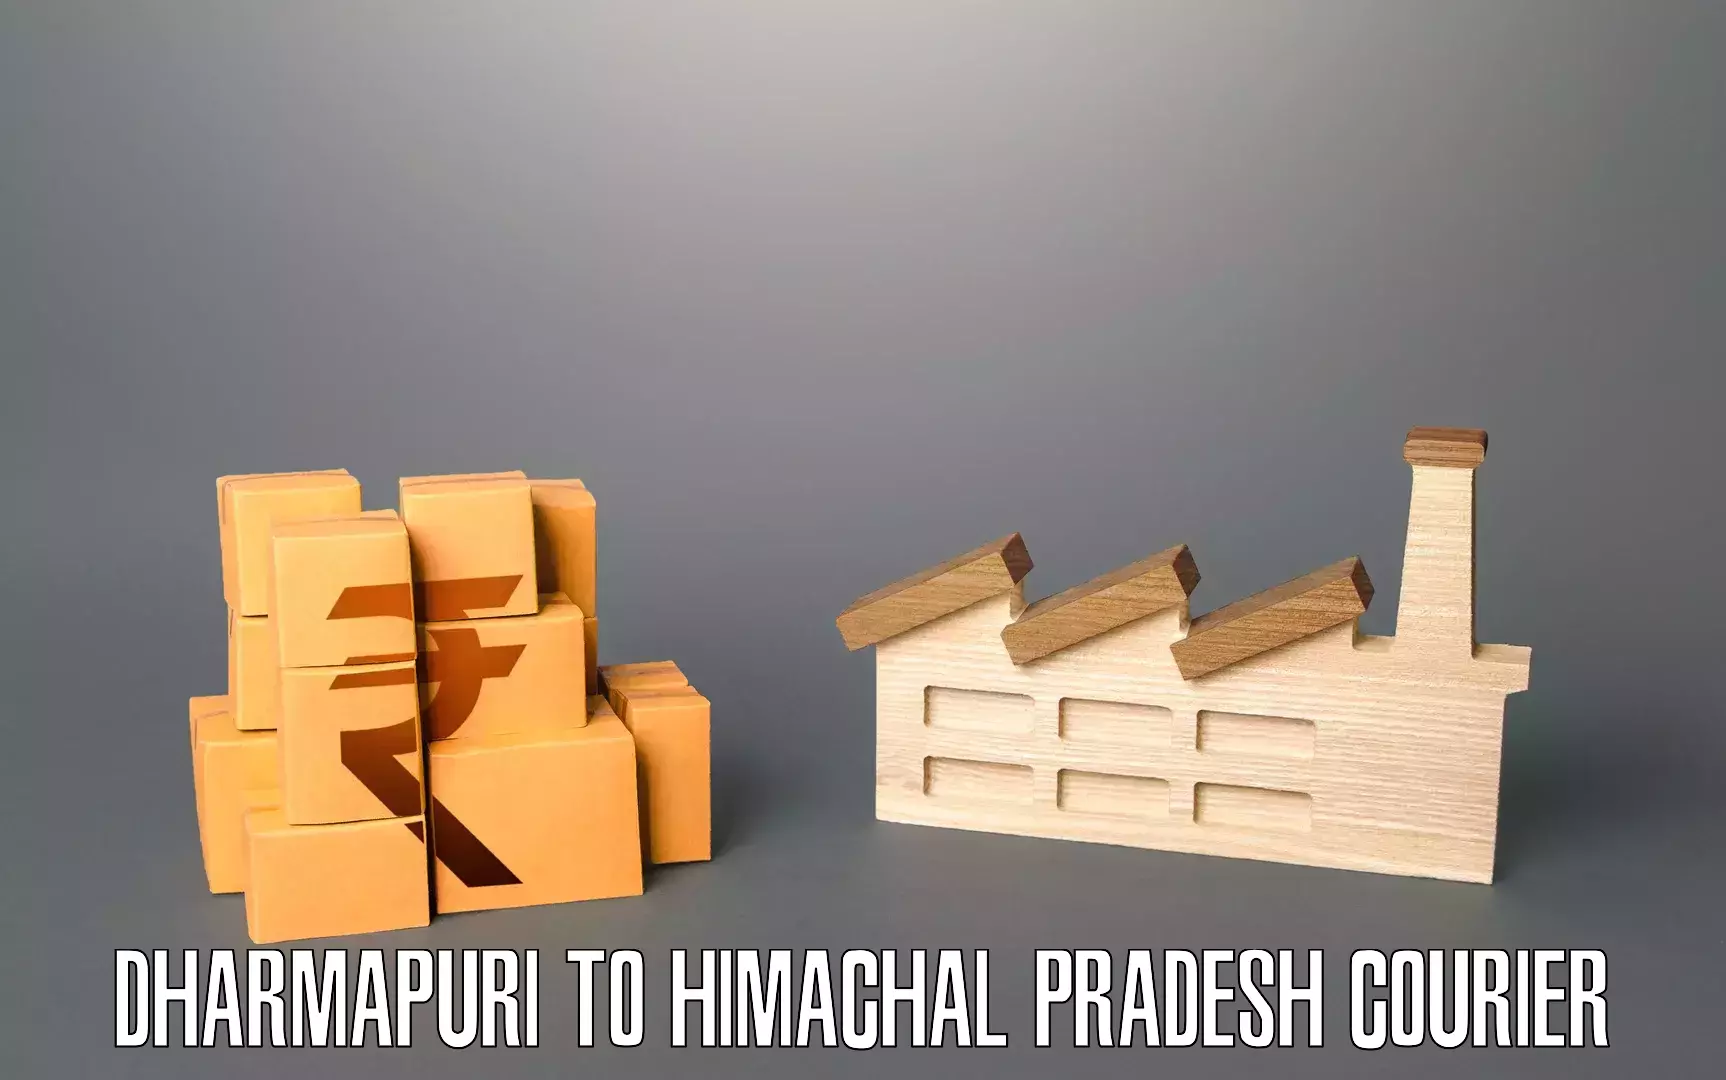 Hassle-free relocation Dharmapuri to Amb Una